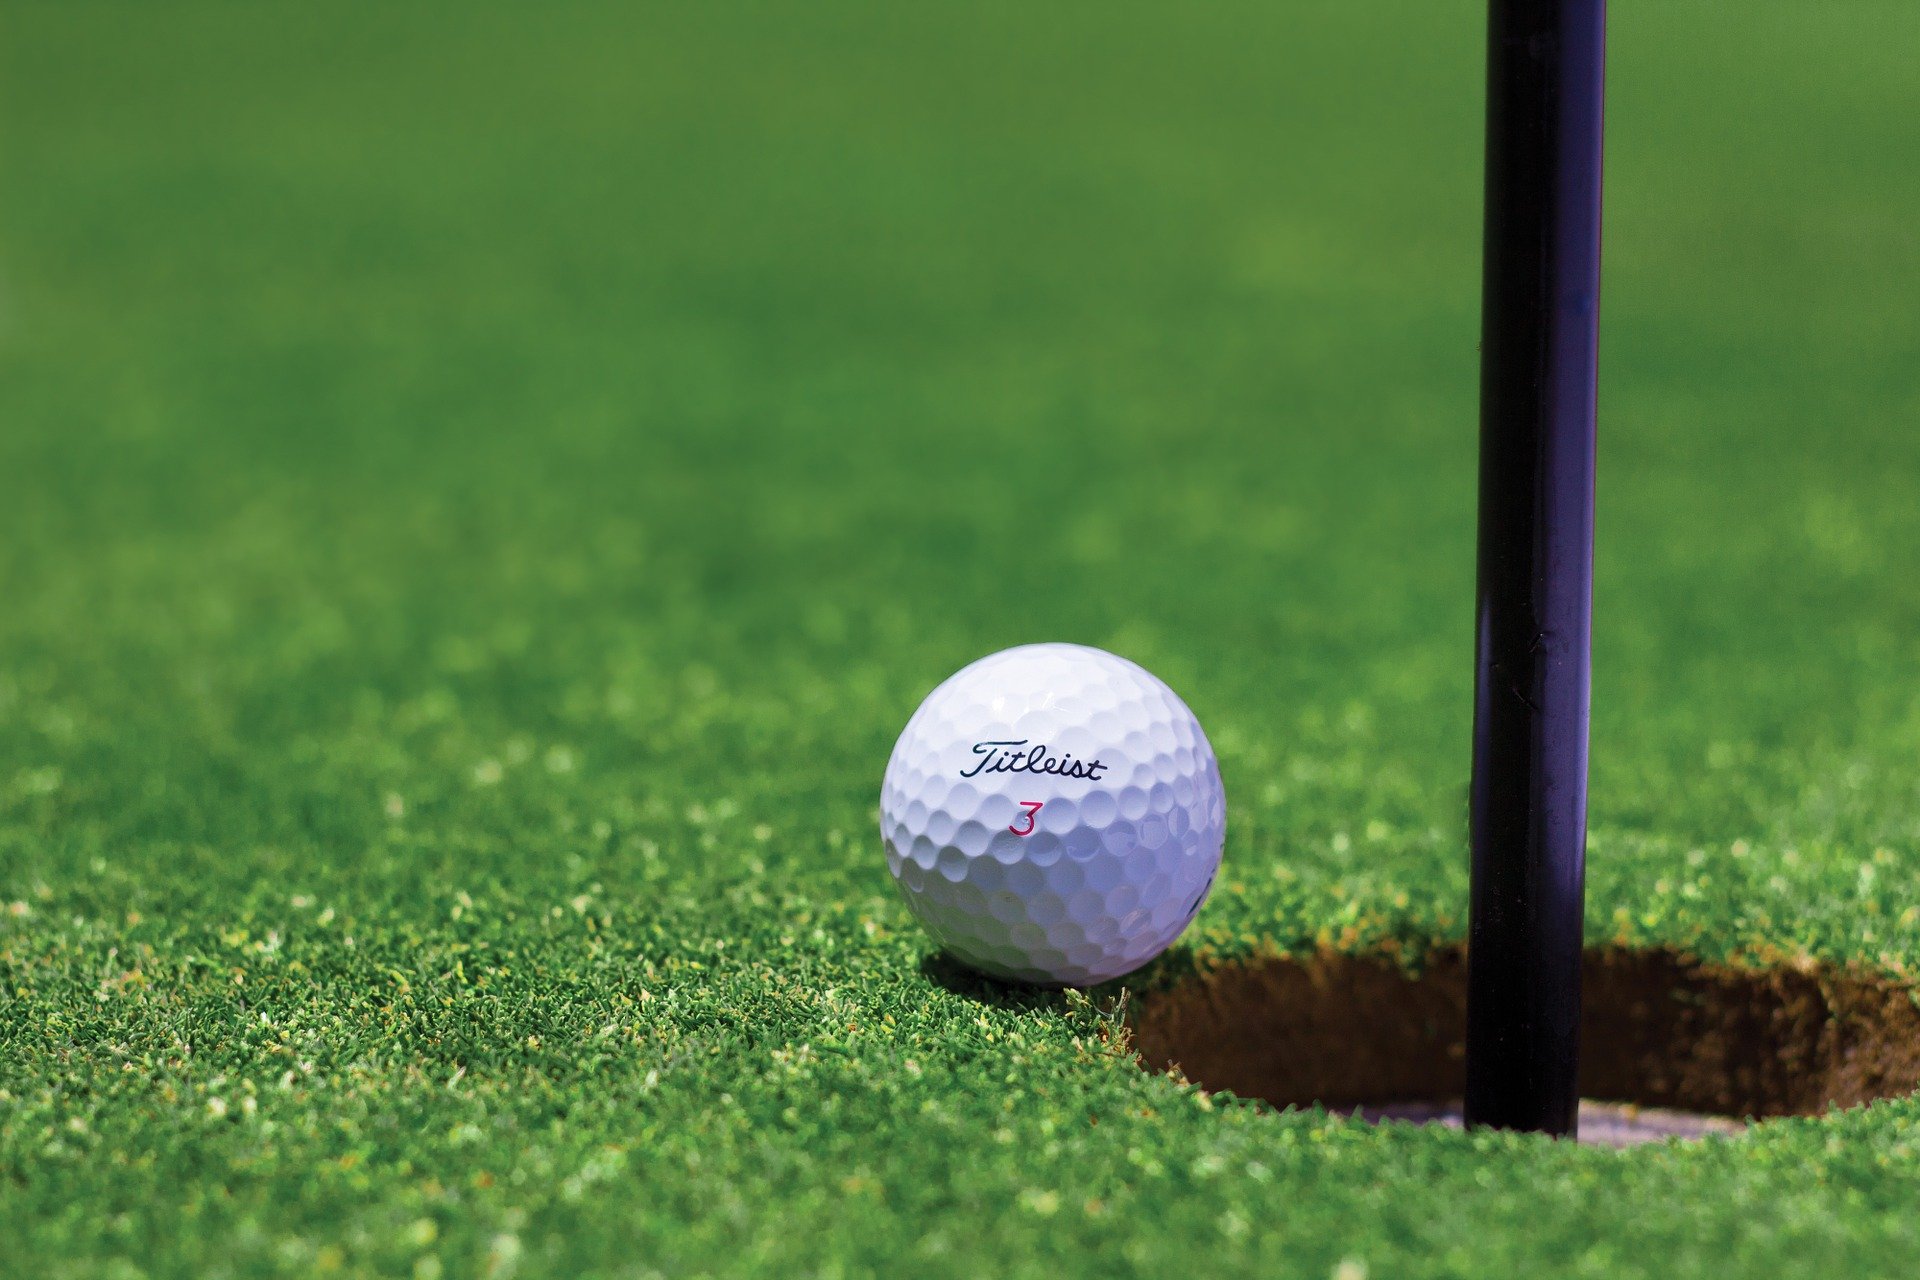 O golfe é um esporte muito praticado entre as pessoas de classes sociais mais alta. Confira as principais regras do golfe.